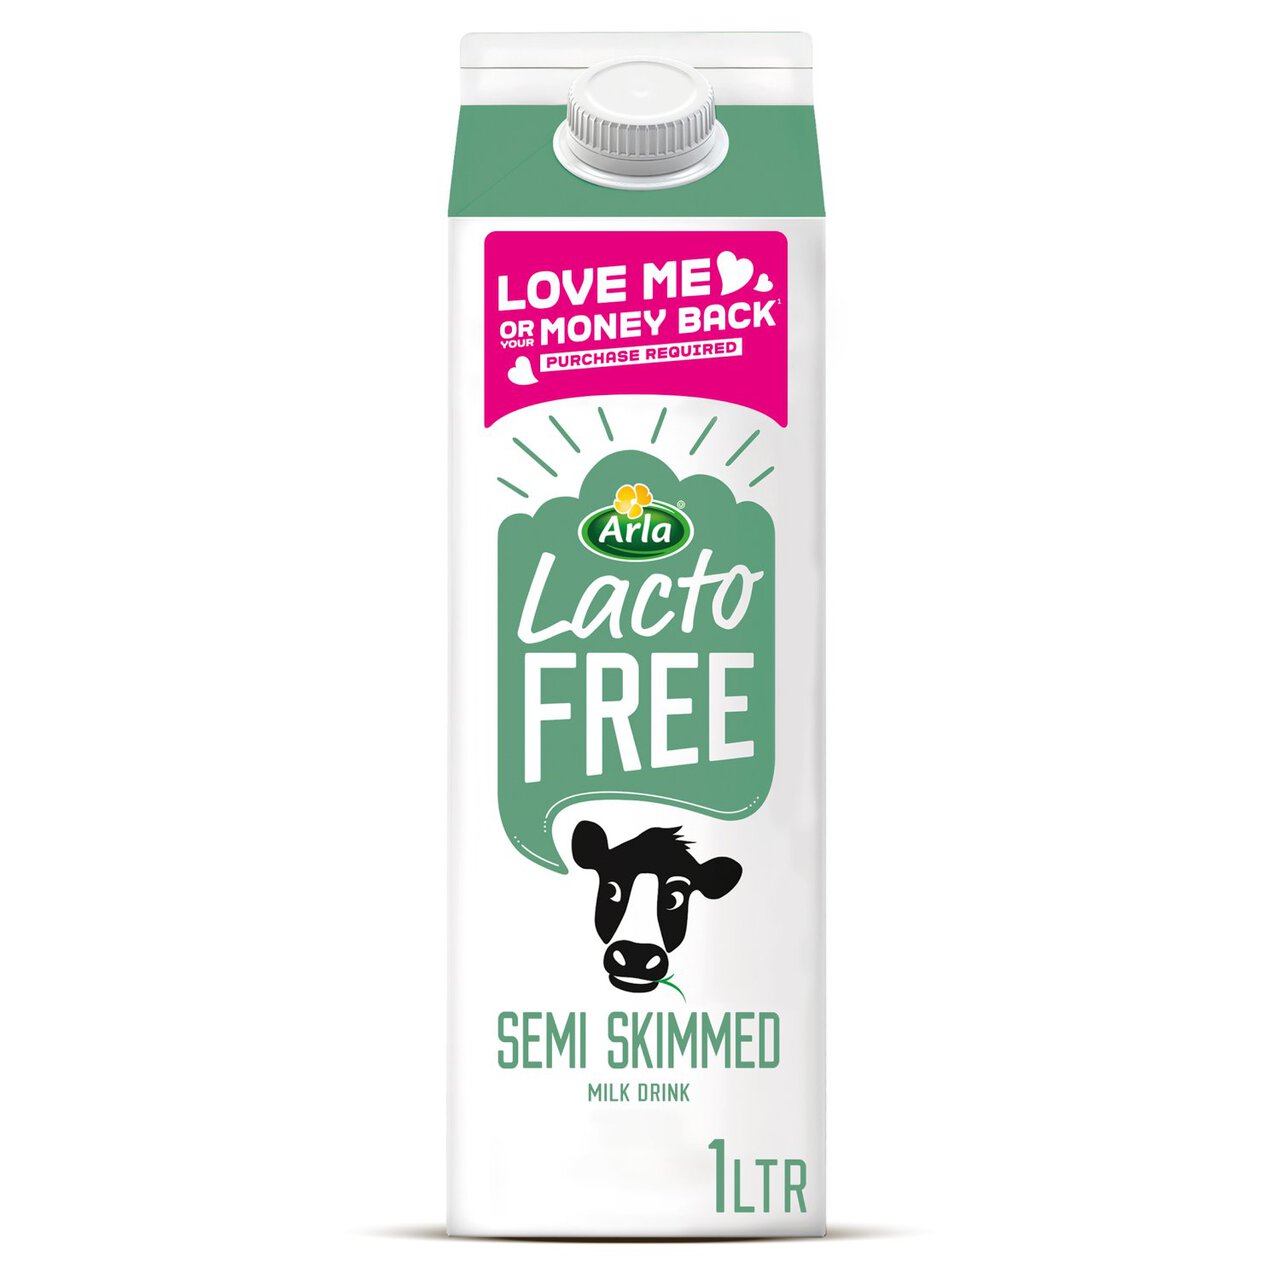 Arla LactoFREE Semi Skimmed Milk Drink 1l